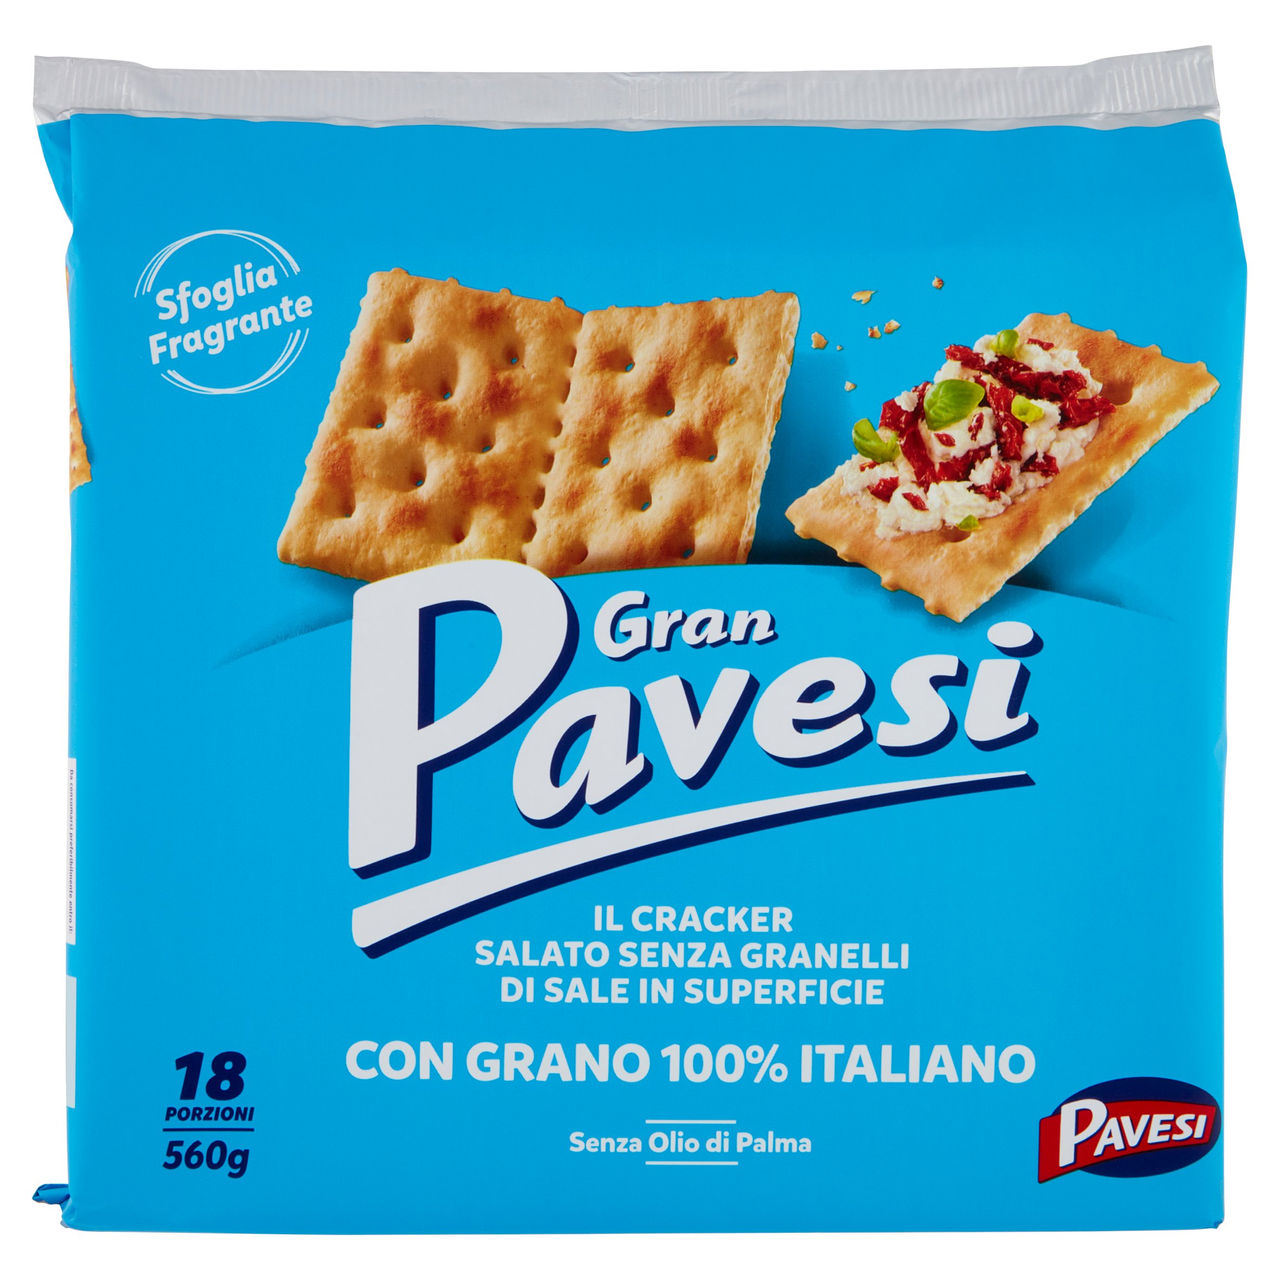 Gran Pavesi Cracker Salato Senza Granelli di Sale